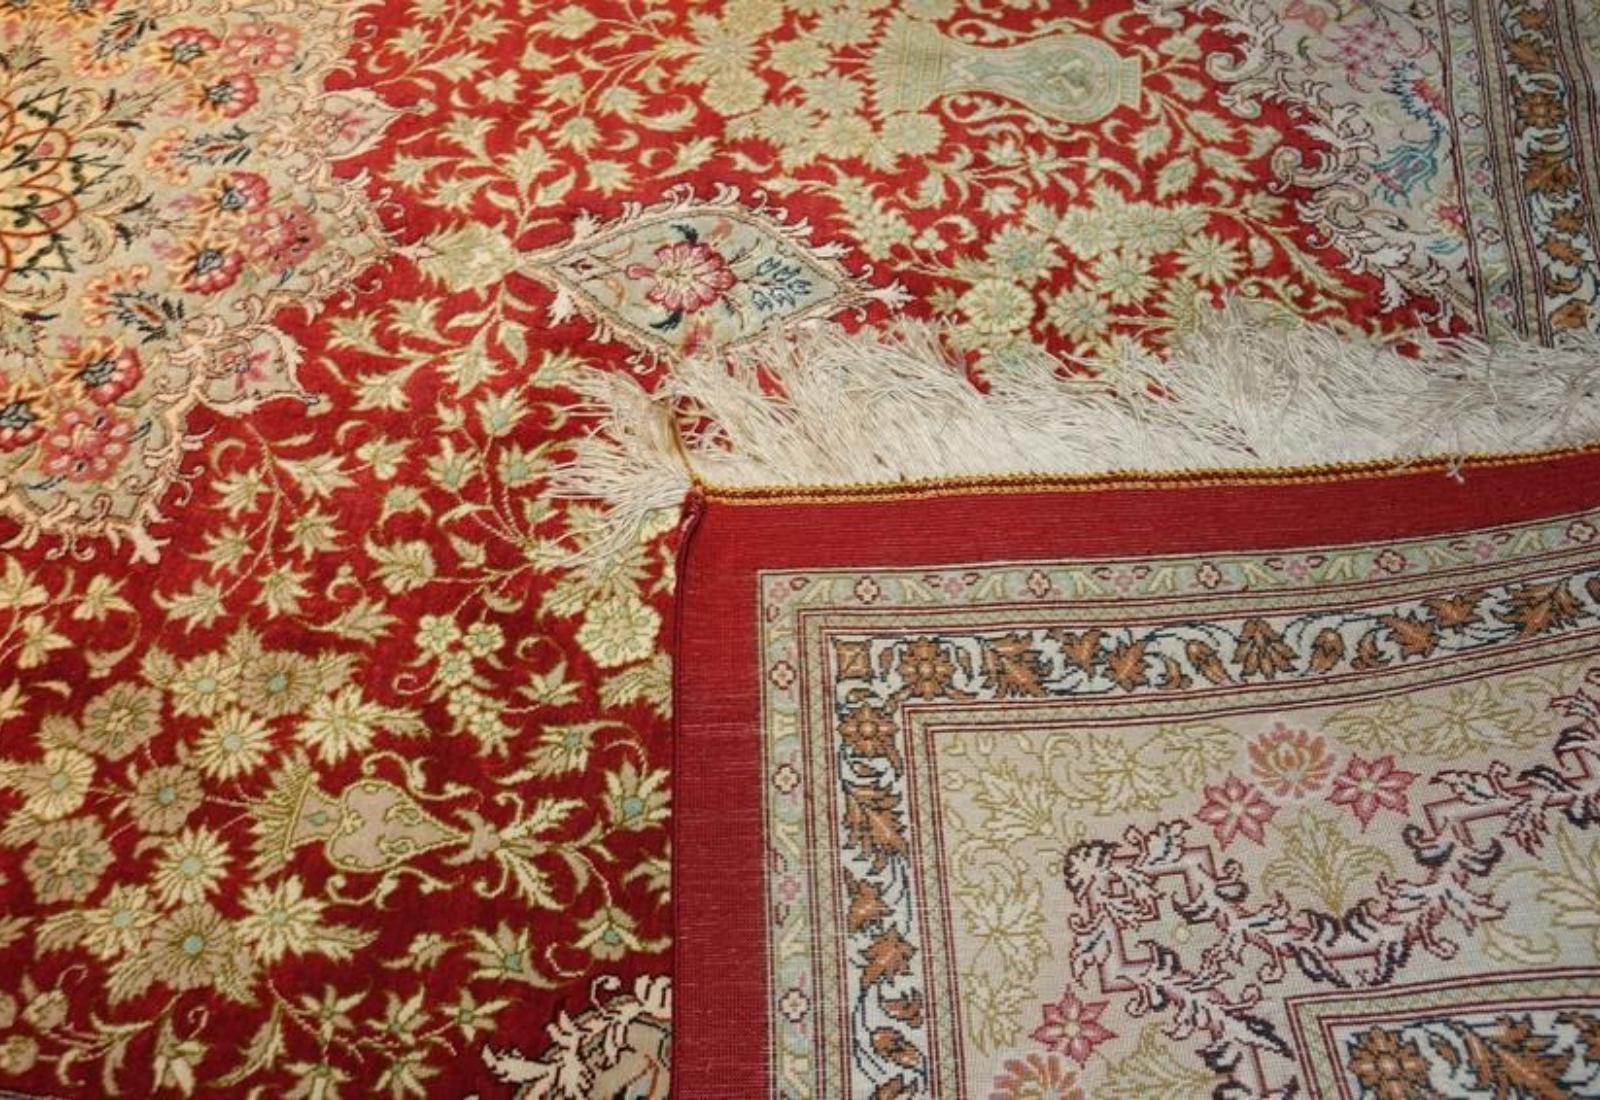 Very fine Persian Silk Qum - 6.8' 4.5' For Sale 1